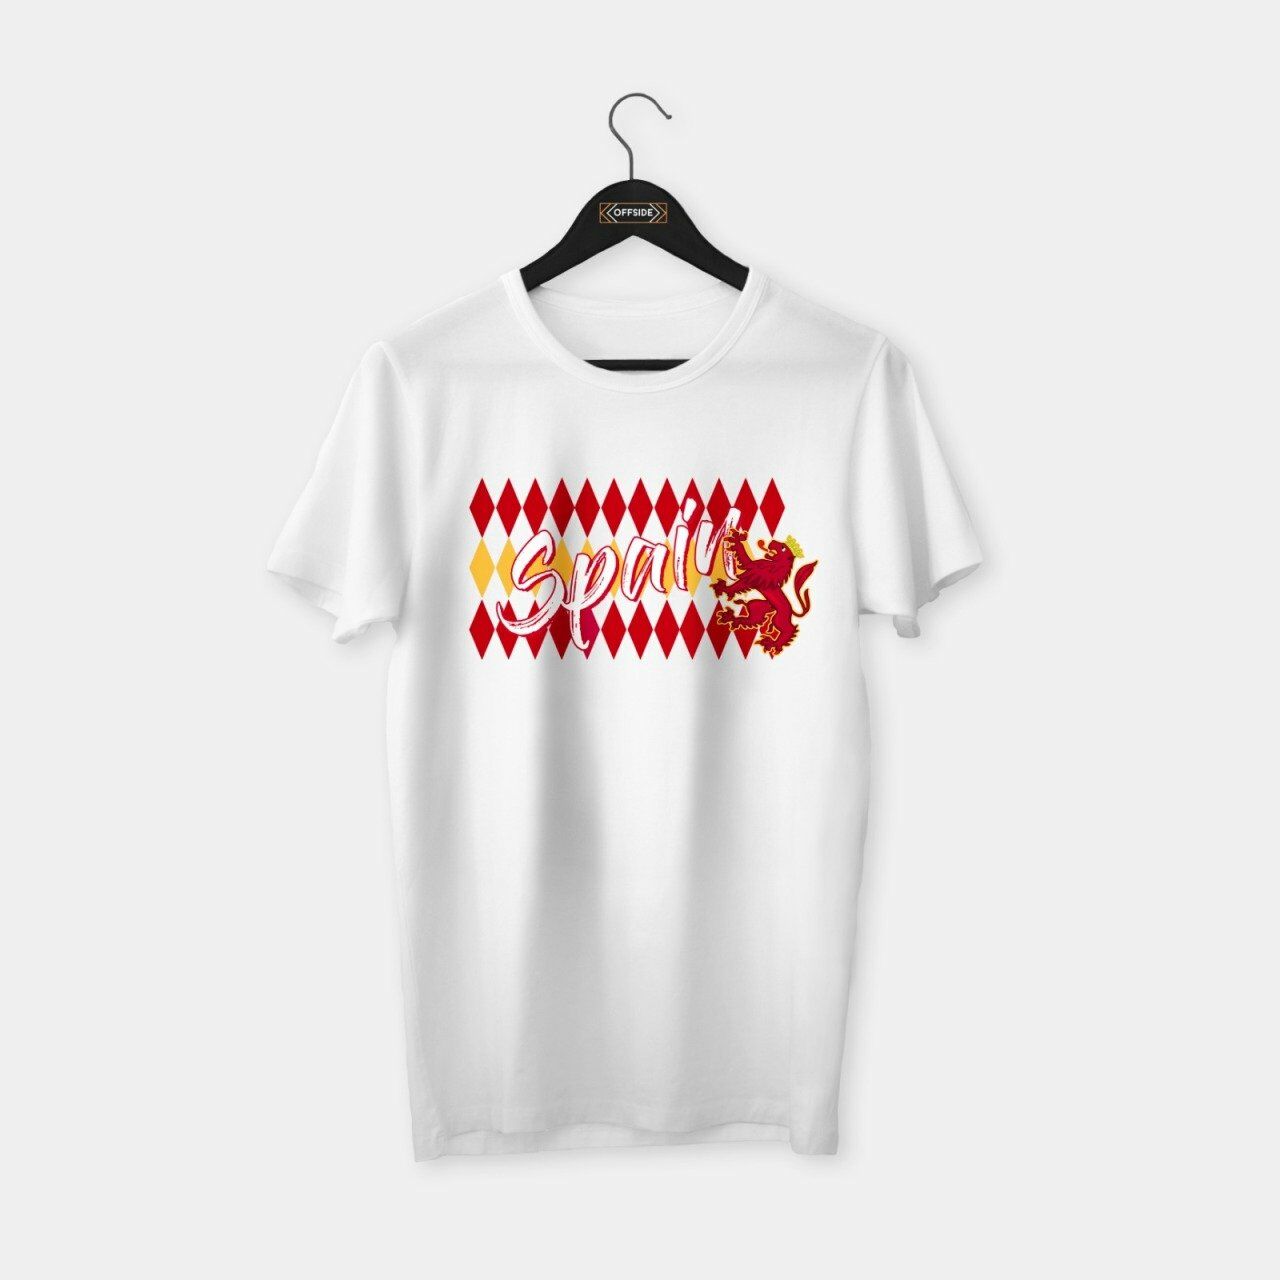 Spain (İspanya) T-shirt